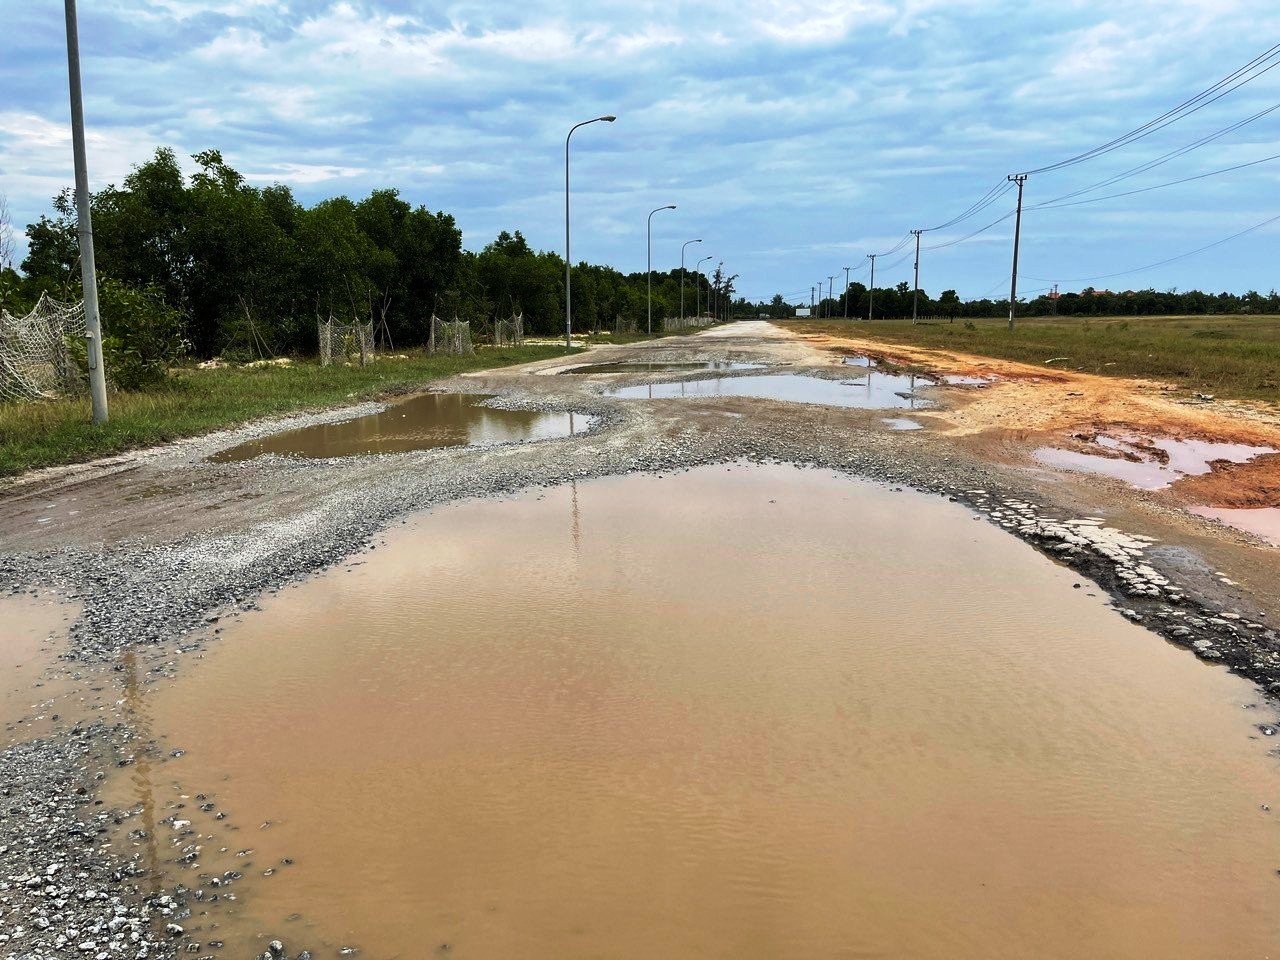 Nhiều tuyến đường ở Khu kinh tế Dung Quất ở huyện Bình Sơn hiện đang xuống cấp nghiêm trọng. Ảnh: Ngọc Viên